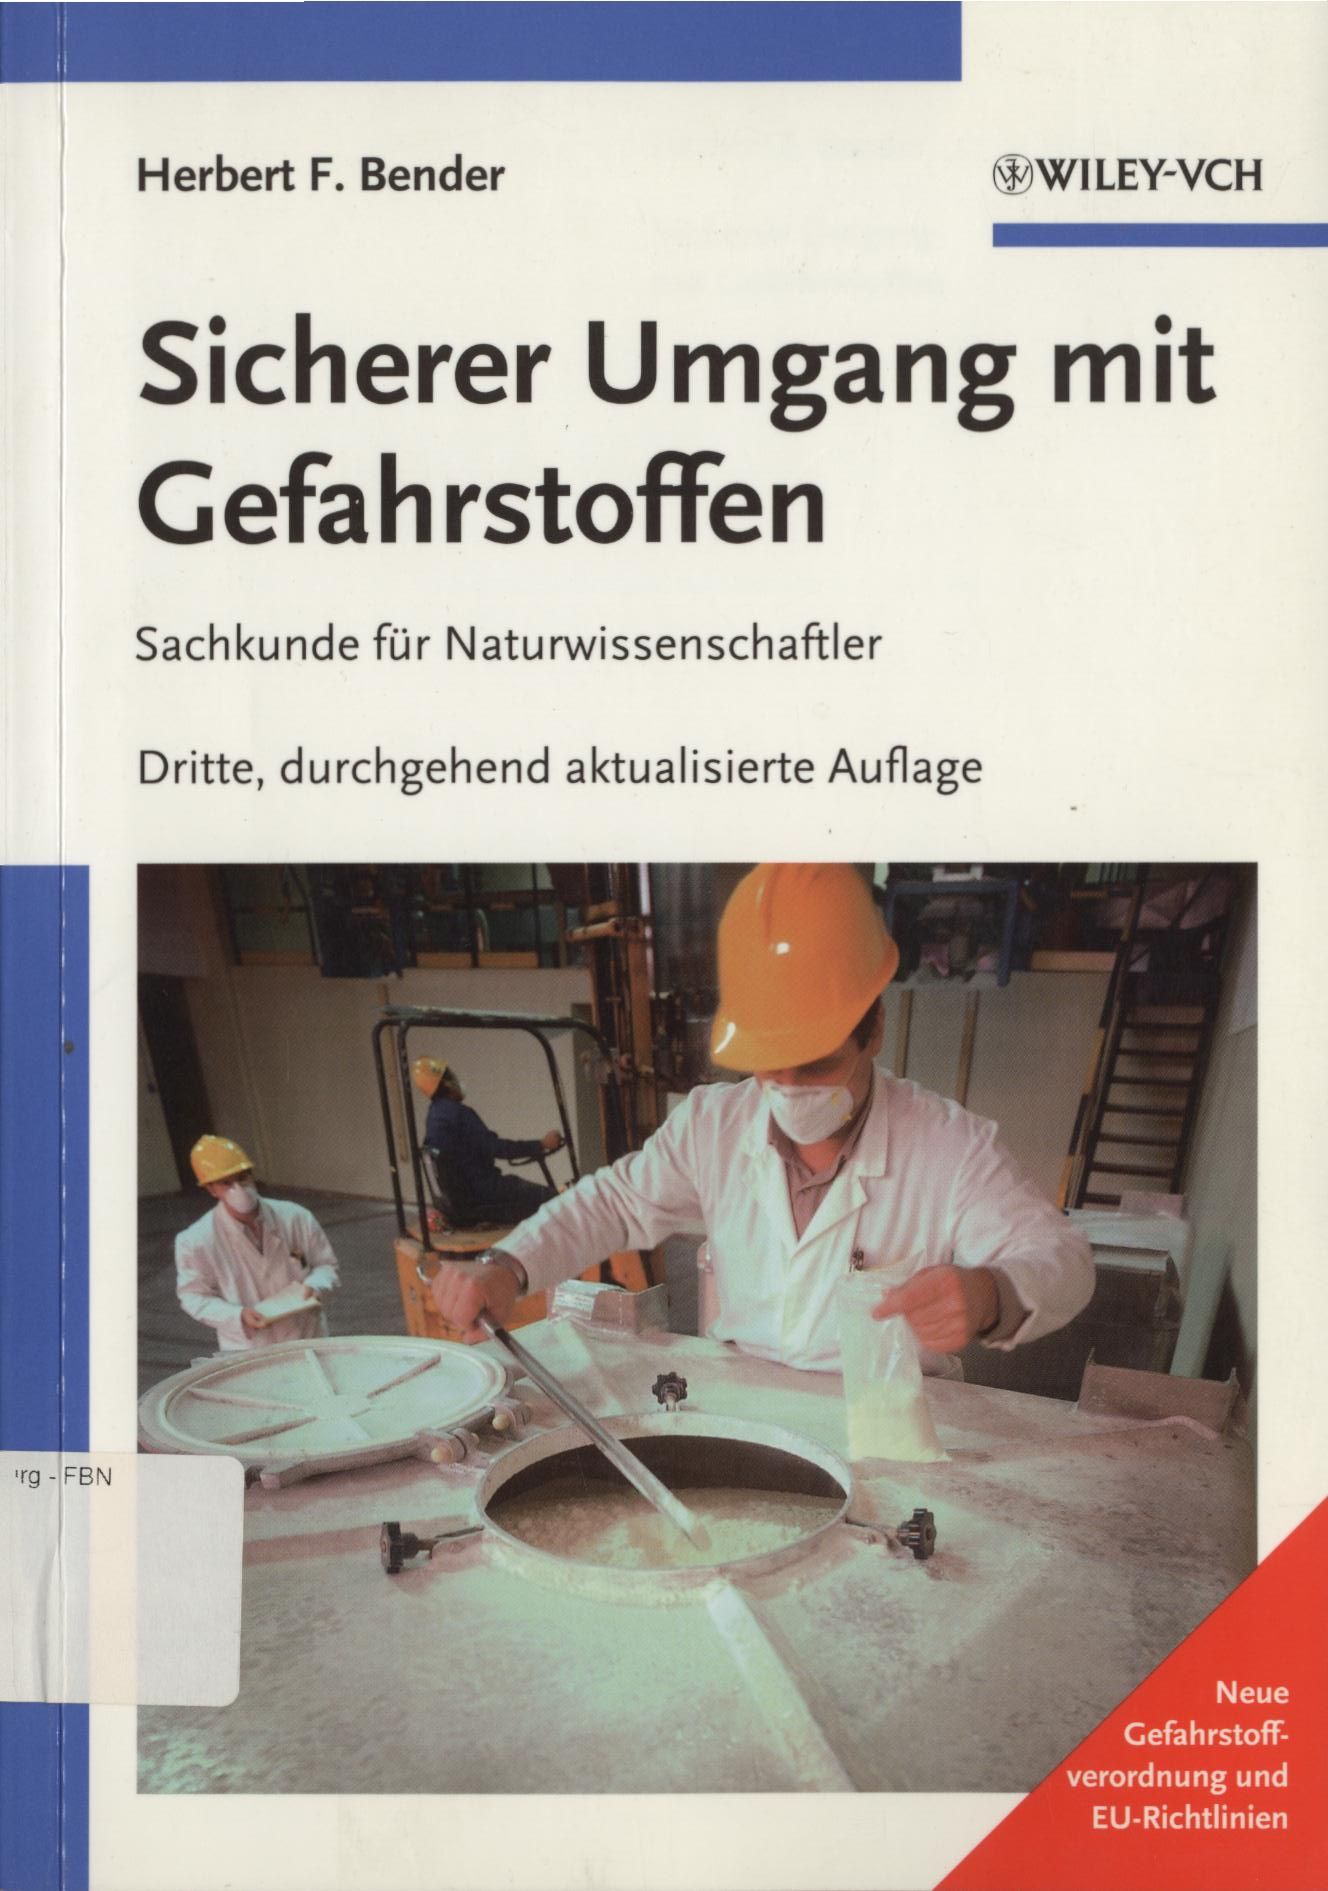 Sicherer Umgang mit Gefahrstoffen Sachkunde für Naturwissenschaftler 3., durchgehend aktualisierte Auflage - Bender, Herbert F.